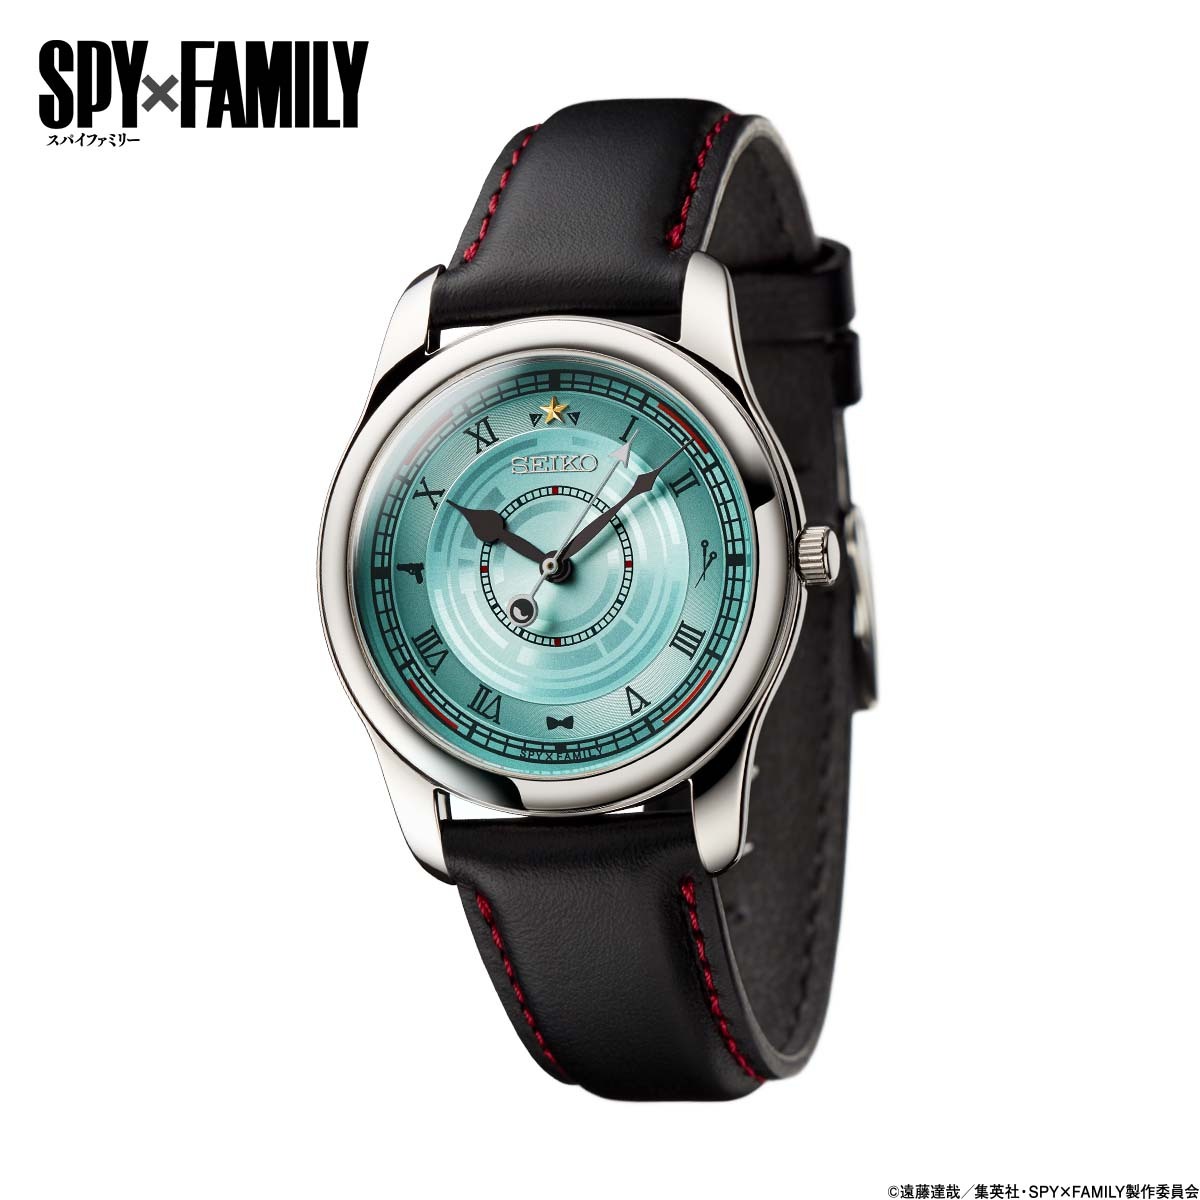 SPY×FAMILY』より、セイコーとコラボした腕時計が登場！“秘密だらけの家族 ”フォージャー家をイメージしたデザイン。プレミコから数量限定で販売開始｜インペリアル・エンタープライズ株式会社のプレスリリース